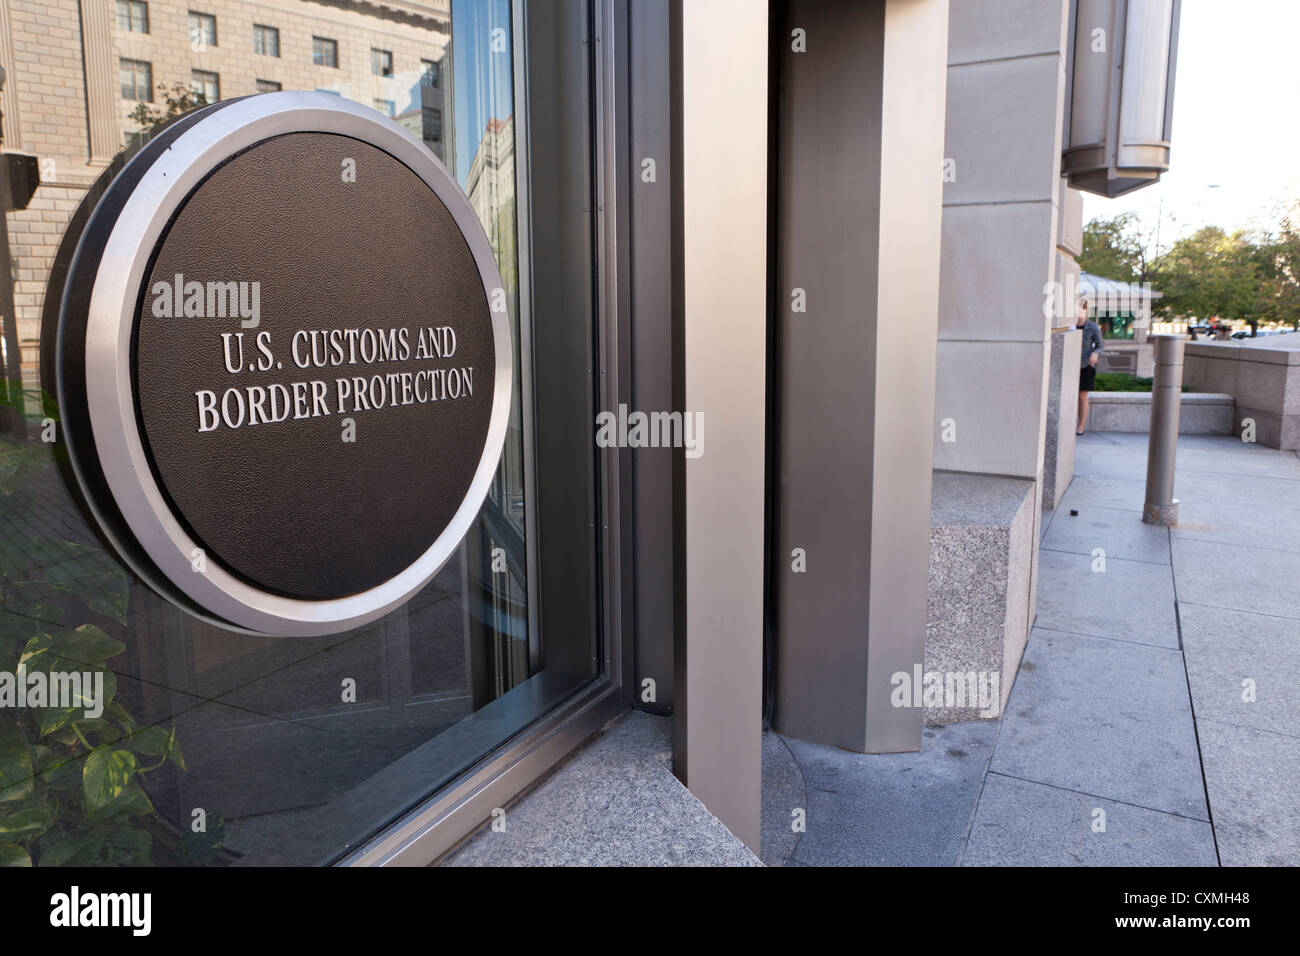 L'US Customs and Border Protection entrée de l'édifice sign - Washington, DC USA Banque D'Images